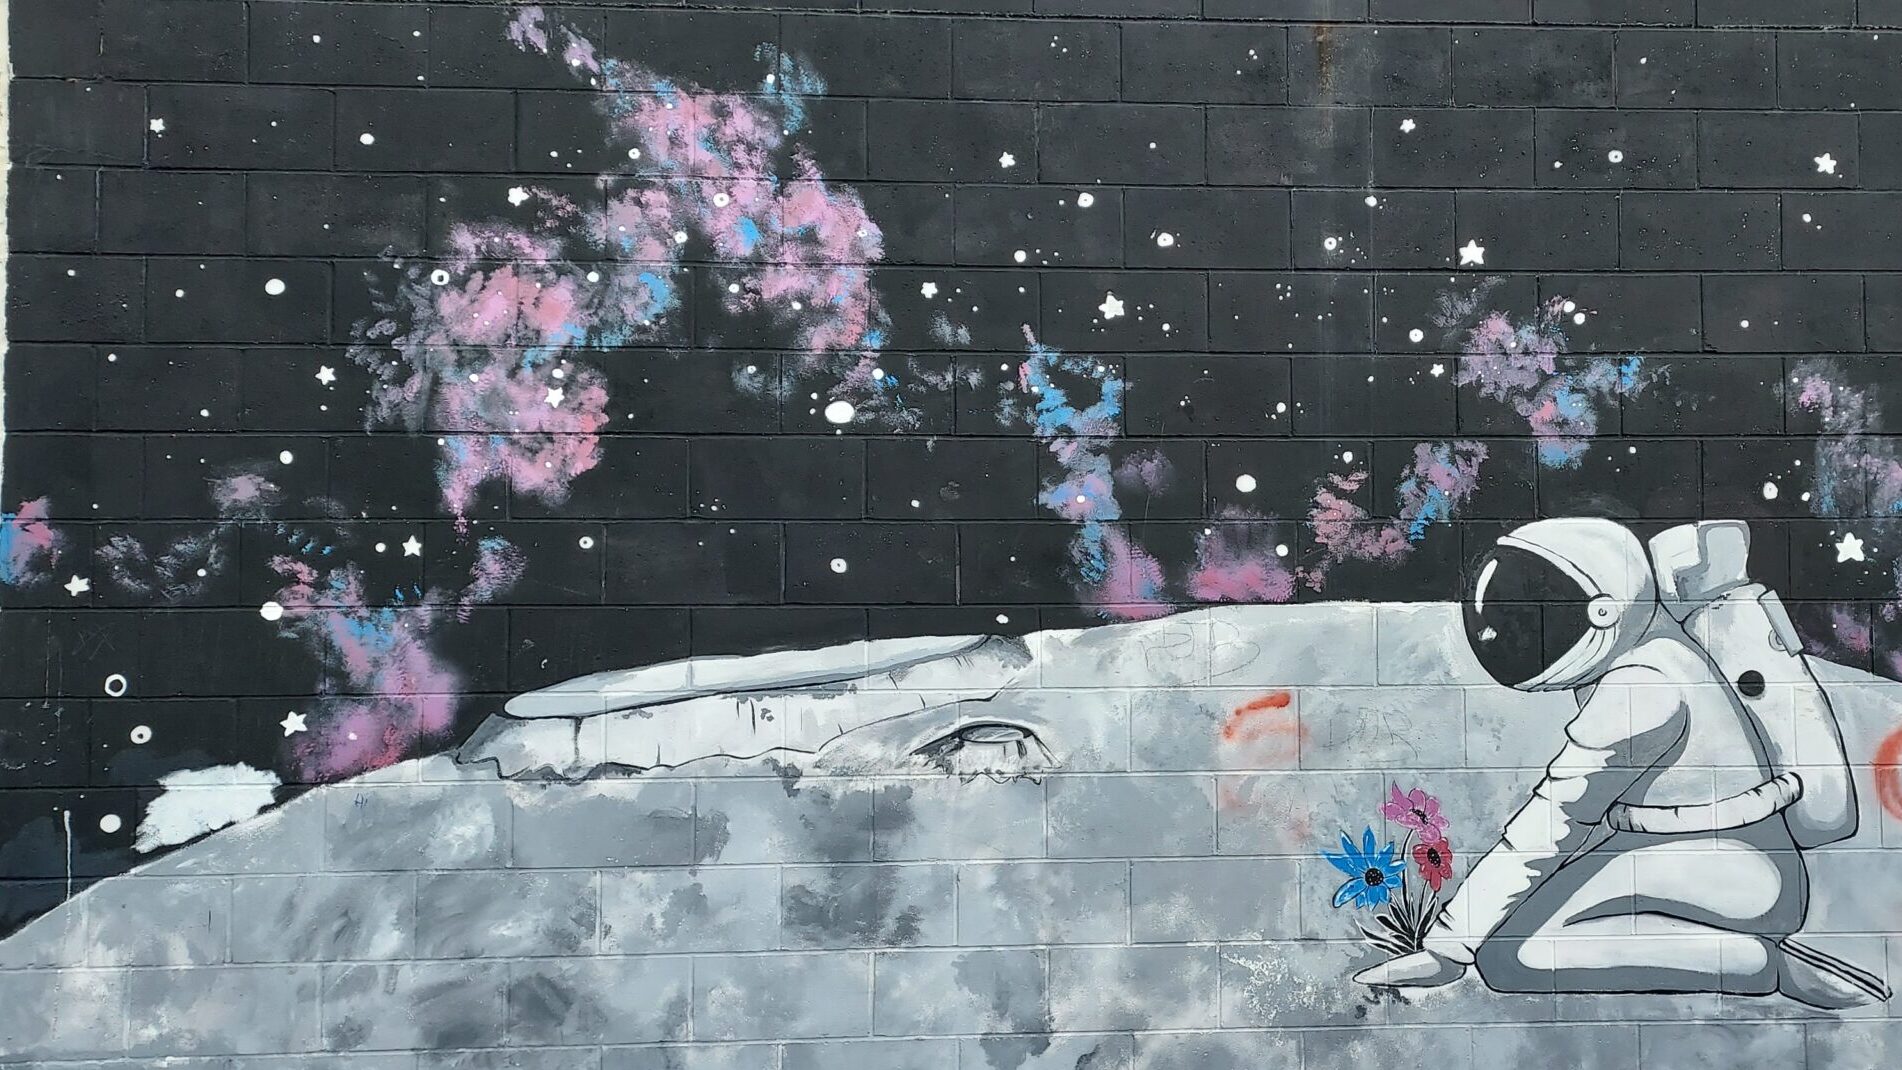 Mural of an Astronaut